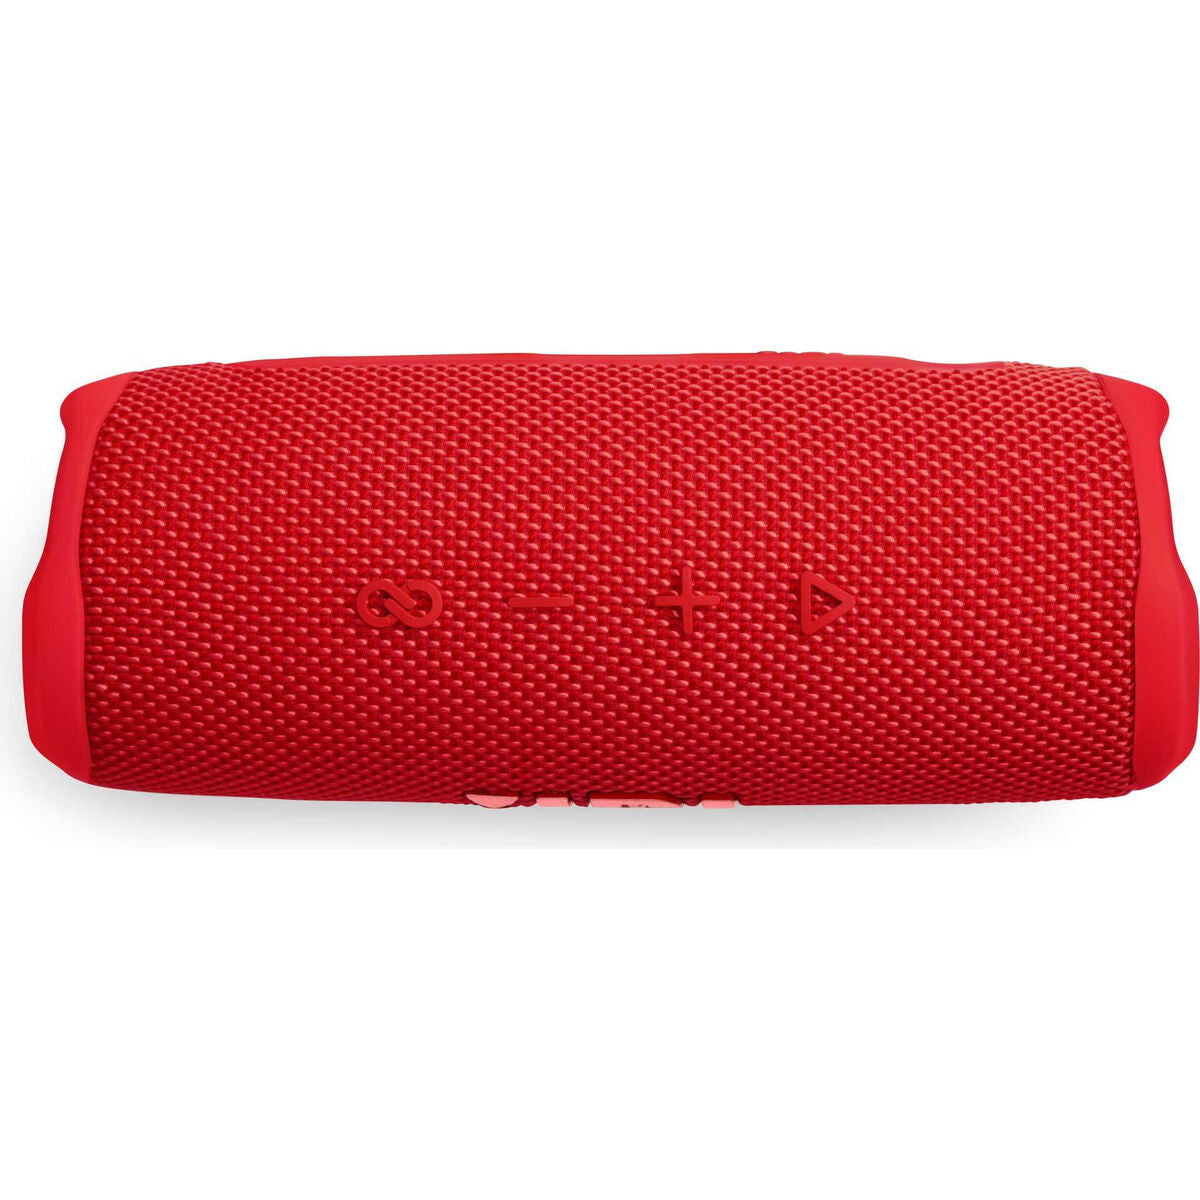 Kaufe Tragbare Bluetooth-Lautsprecher JBL Flip 6 20 W Rot bei AWK Flagship um € 187.00